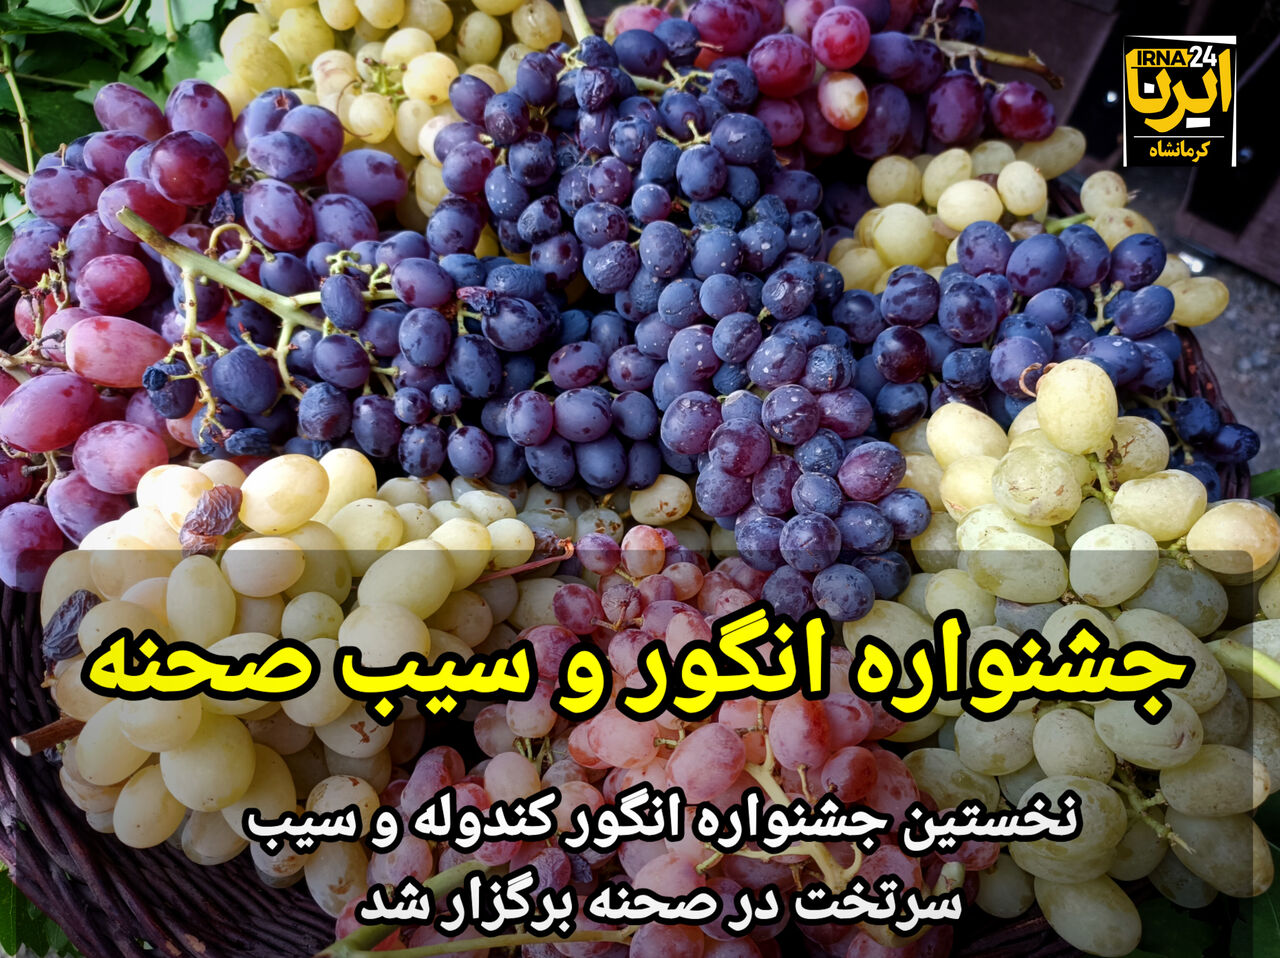 نخستین جشنواره انگور و سیب صحنه در کرمانشاه برگزار شد+فیلم